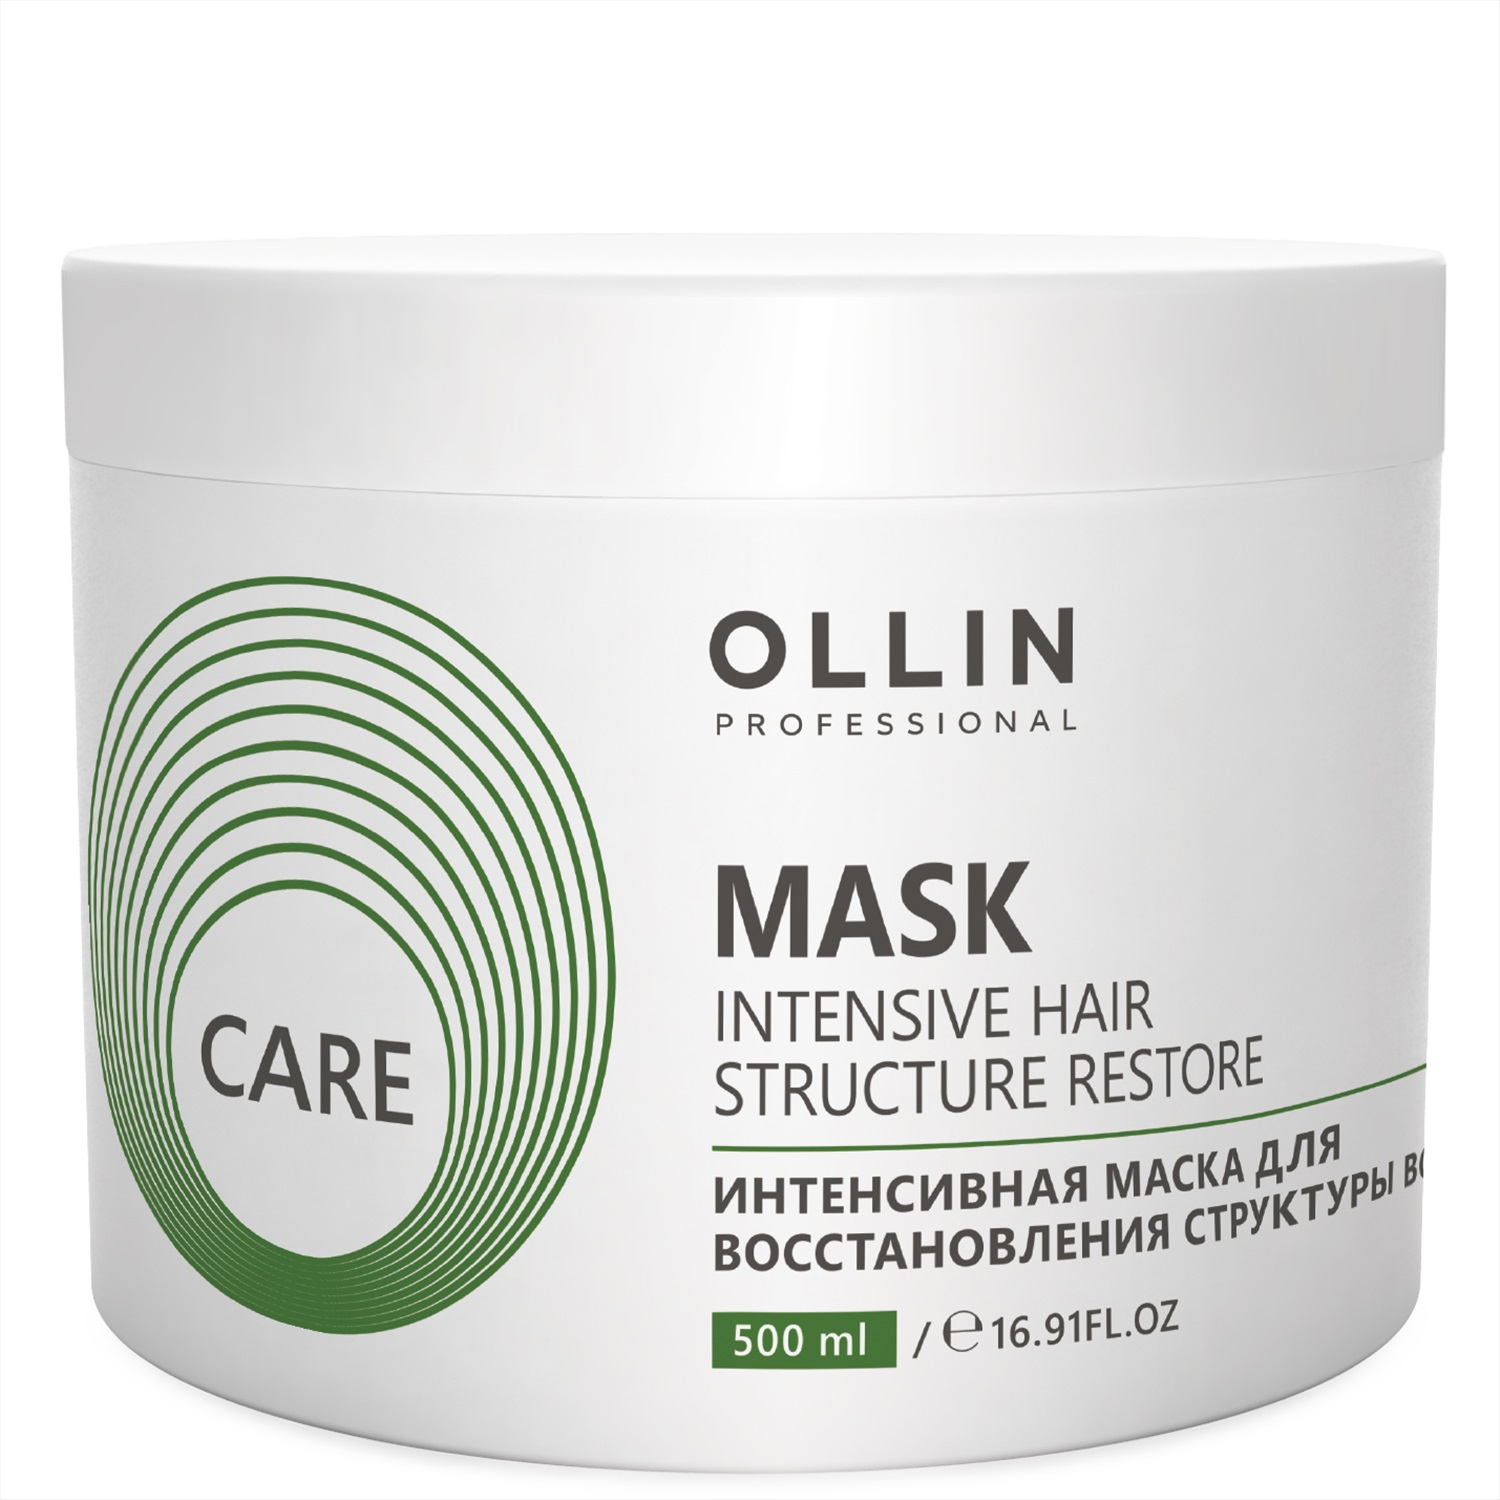 Увлажняющая маска для поврежденных волос. Маска Оллин Care интенсивная. Ollin restore Intensive Mask. Оллин маска увлажняющая для волос 500 мл. Маска Ollin для глубокого увлажнения Care.